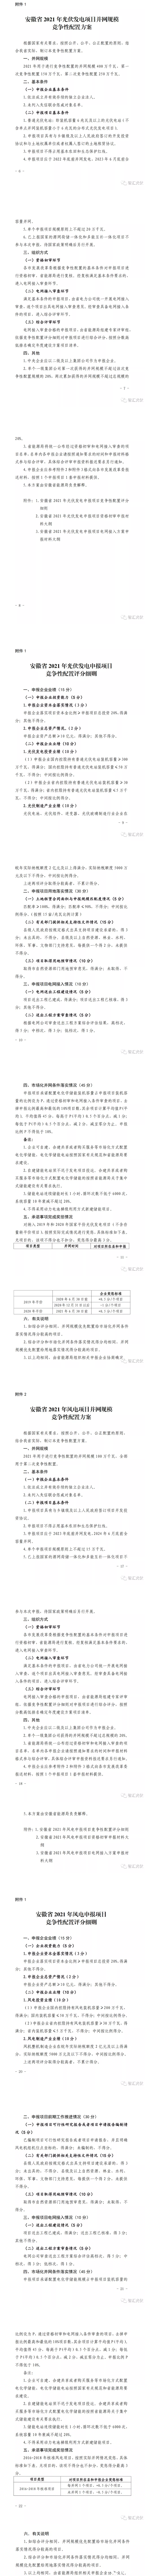 安徽：6GW保障性规模，要求配储能、不要求竞电价